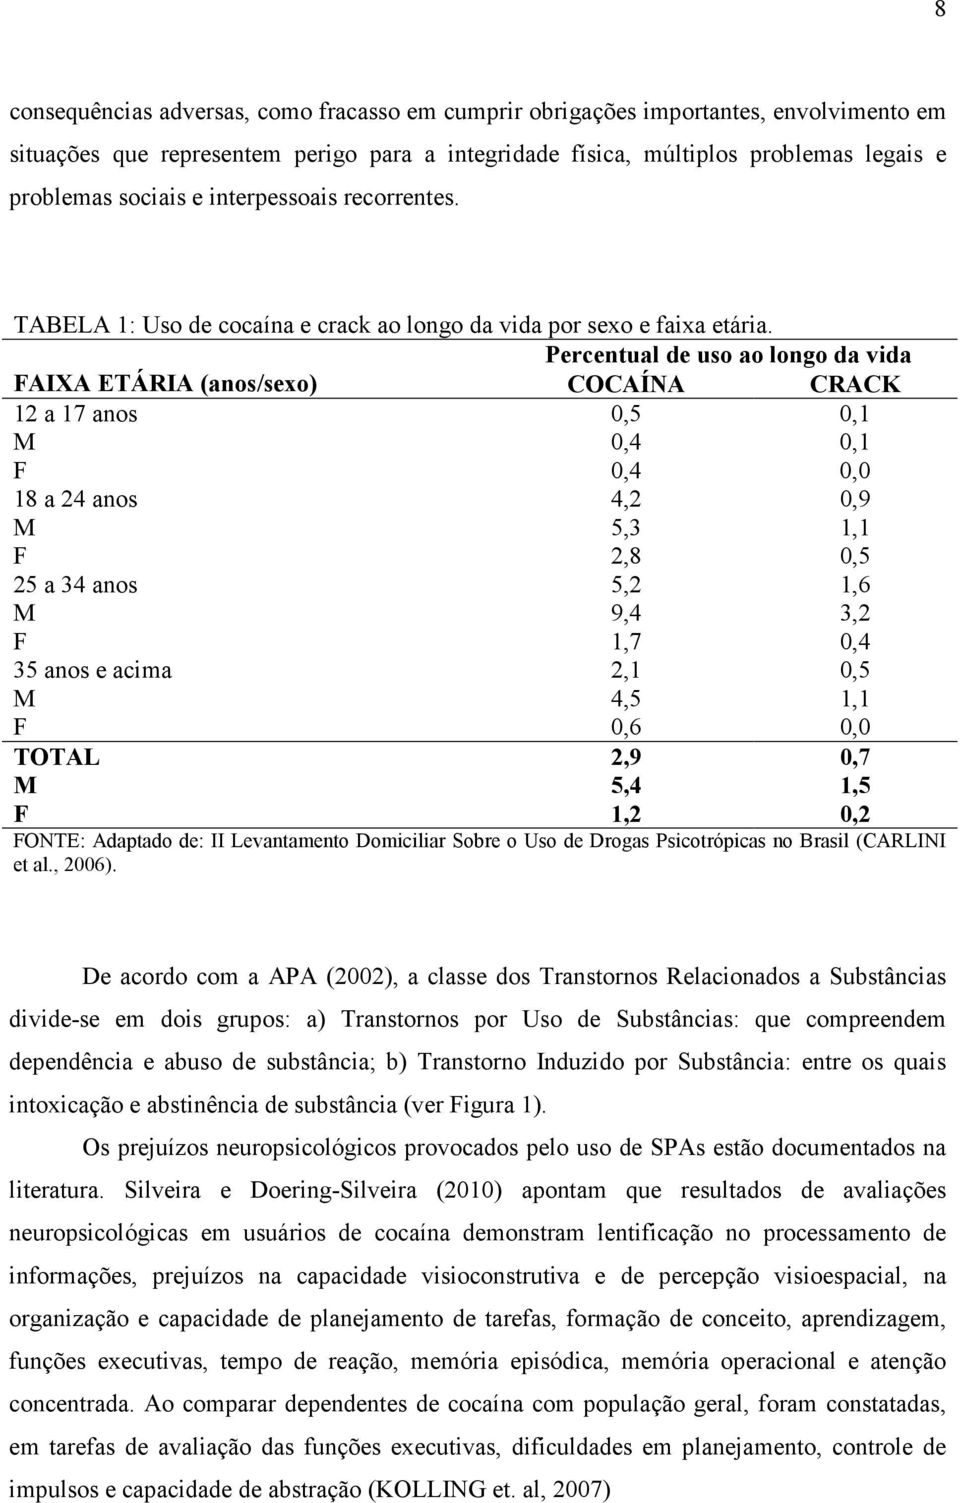 Percentual de uso ao longo da vida FAIXA ETÁRIA (anos/sexo) COCAÍNA CRACK 12 a 17 anos M F 0,5 0,4 0,4 0,1 0,1 0,0 18 a 24 anos M F 25 a 34 anos M F 35 anos e acima M F TOTAL M F 4,2 5,3 2,8 5,2 9,4